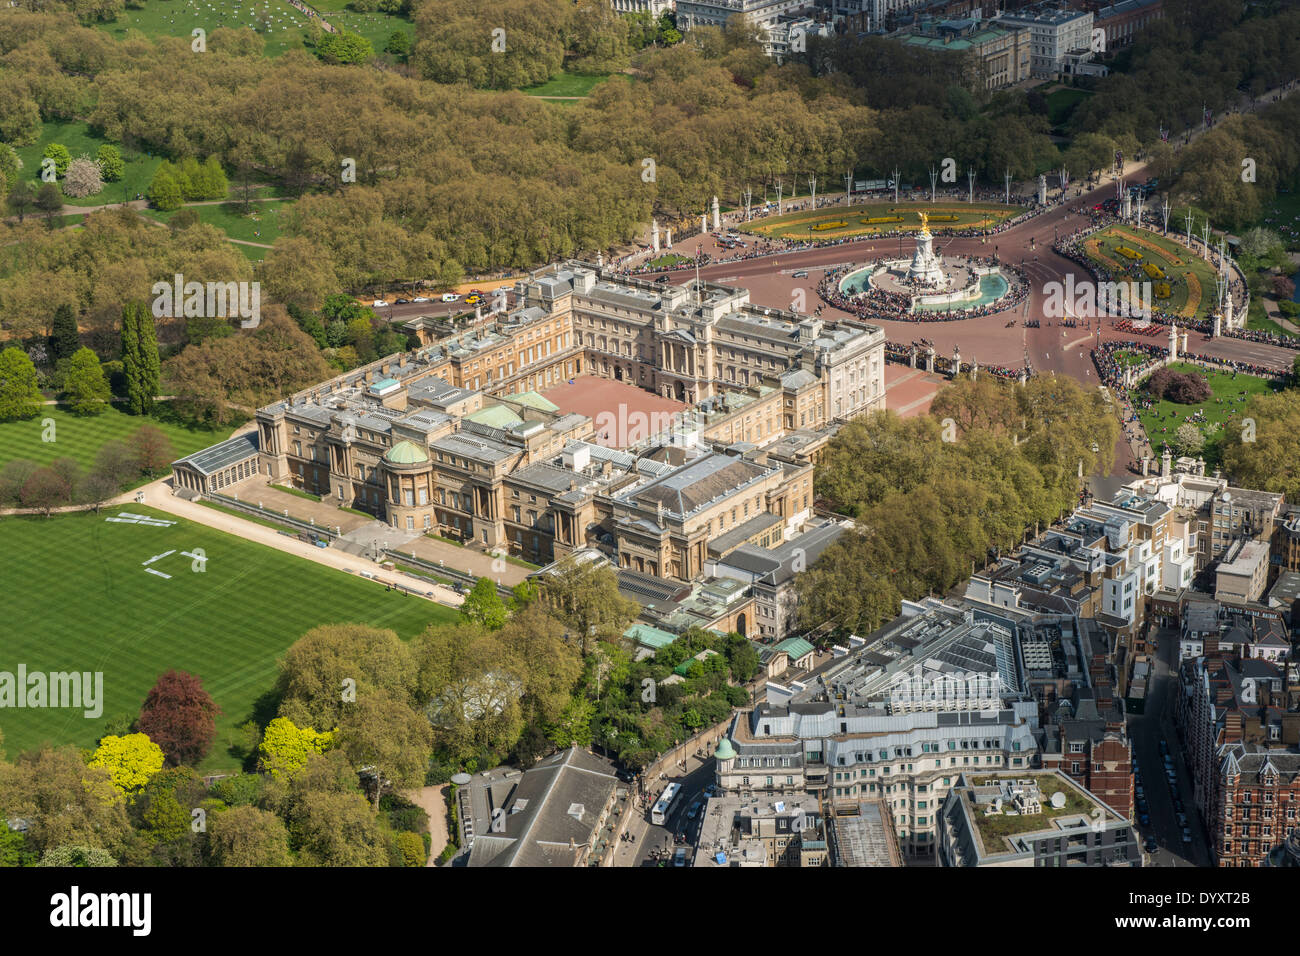 Vista aerea del Buckingham Palace, il giardino, il memoriale della Victoria e parco verde in background. Foto Stock